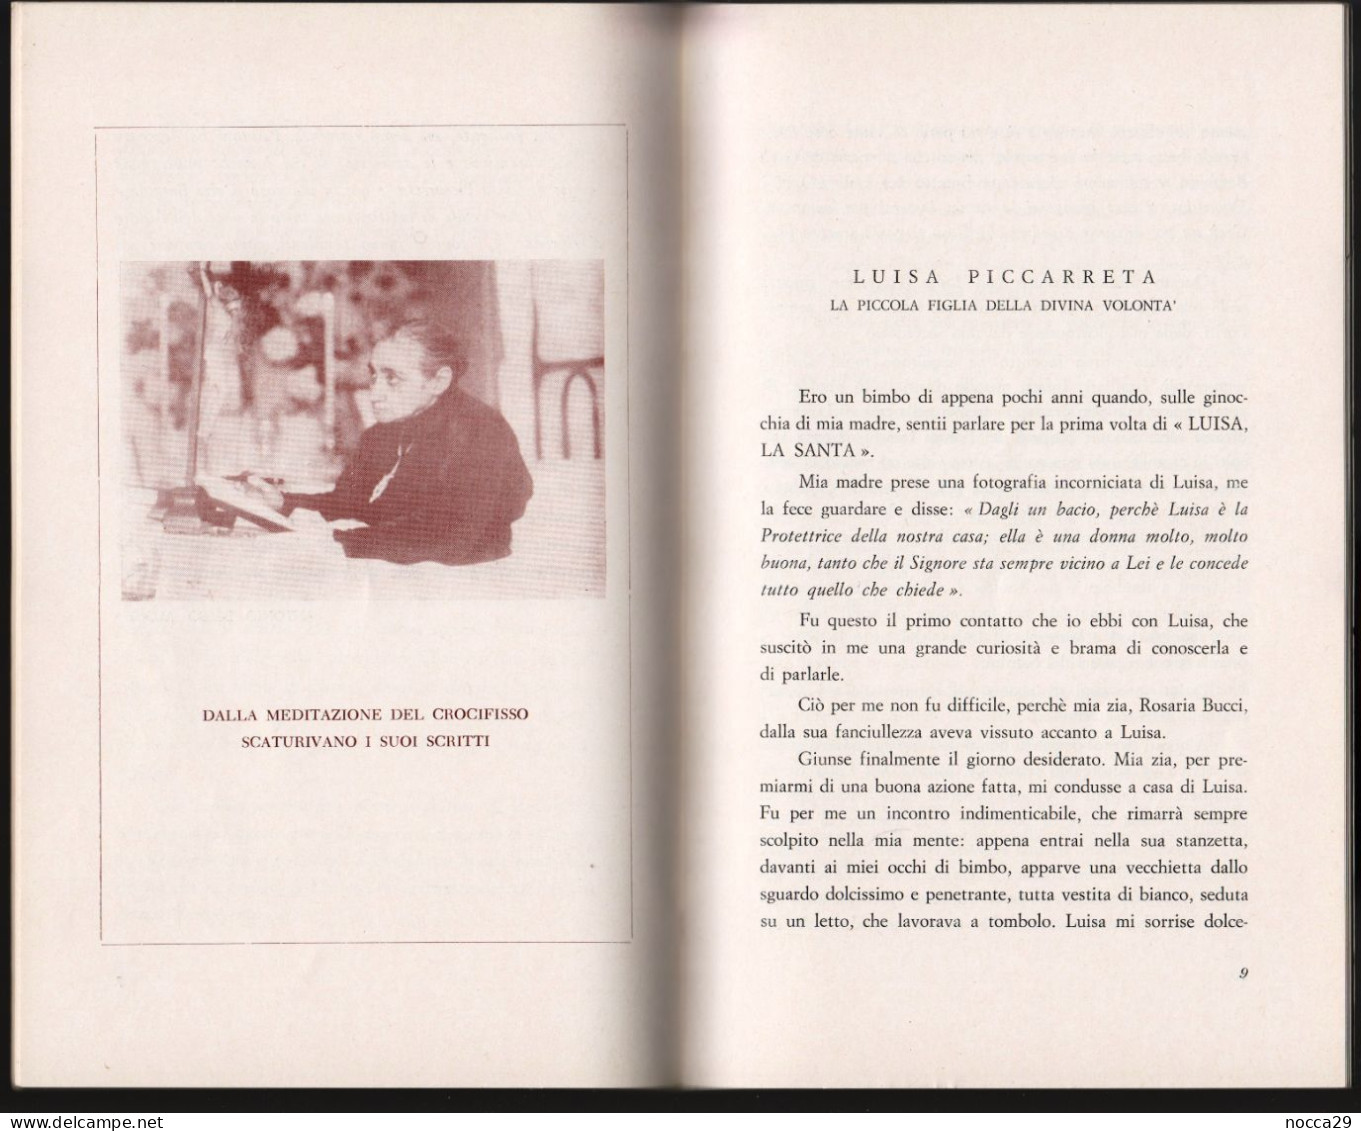 OPUSCOLO DEL 1980 - LUISA PICCARRETA DETTA "LUISA LA SANTA" - AUTORE: P. BERNARDINO GIUSEPPE BUCCI  (STAMP272) - Religione